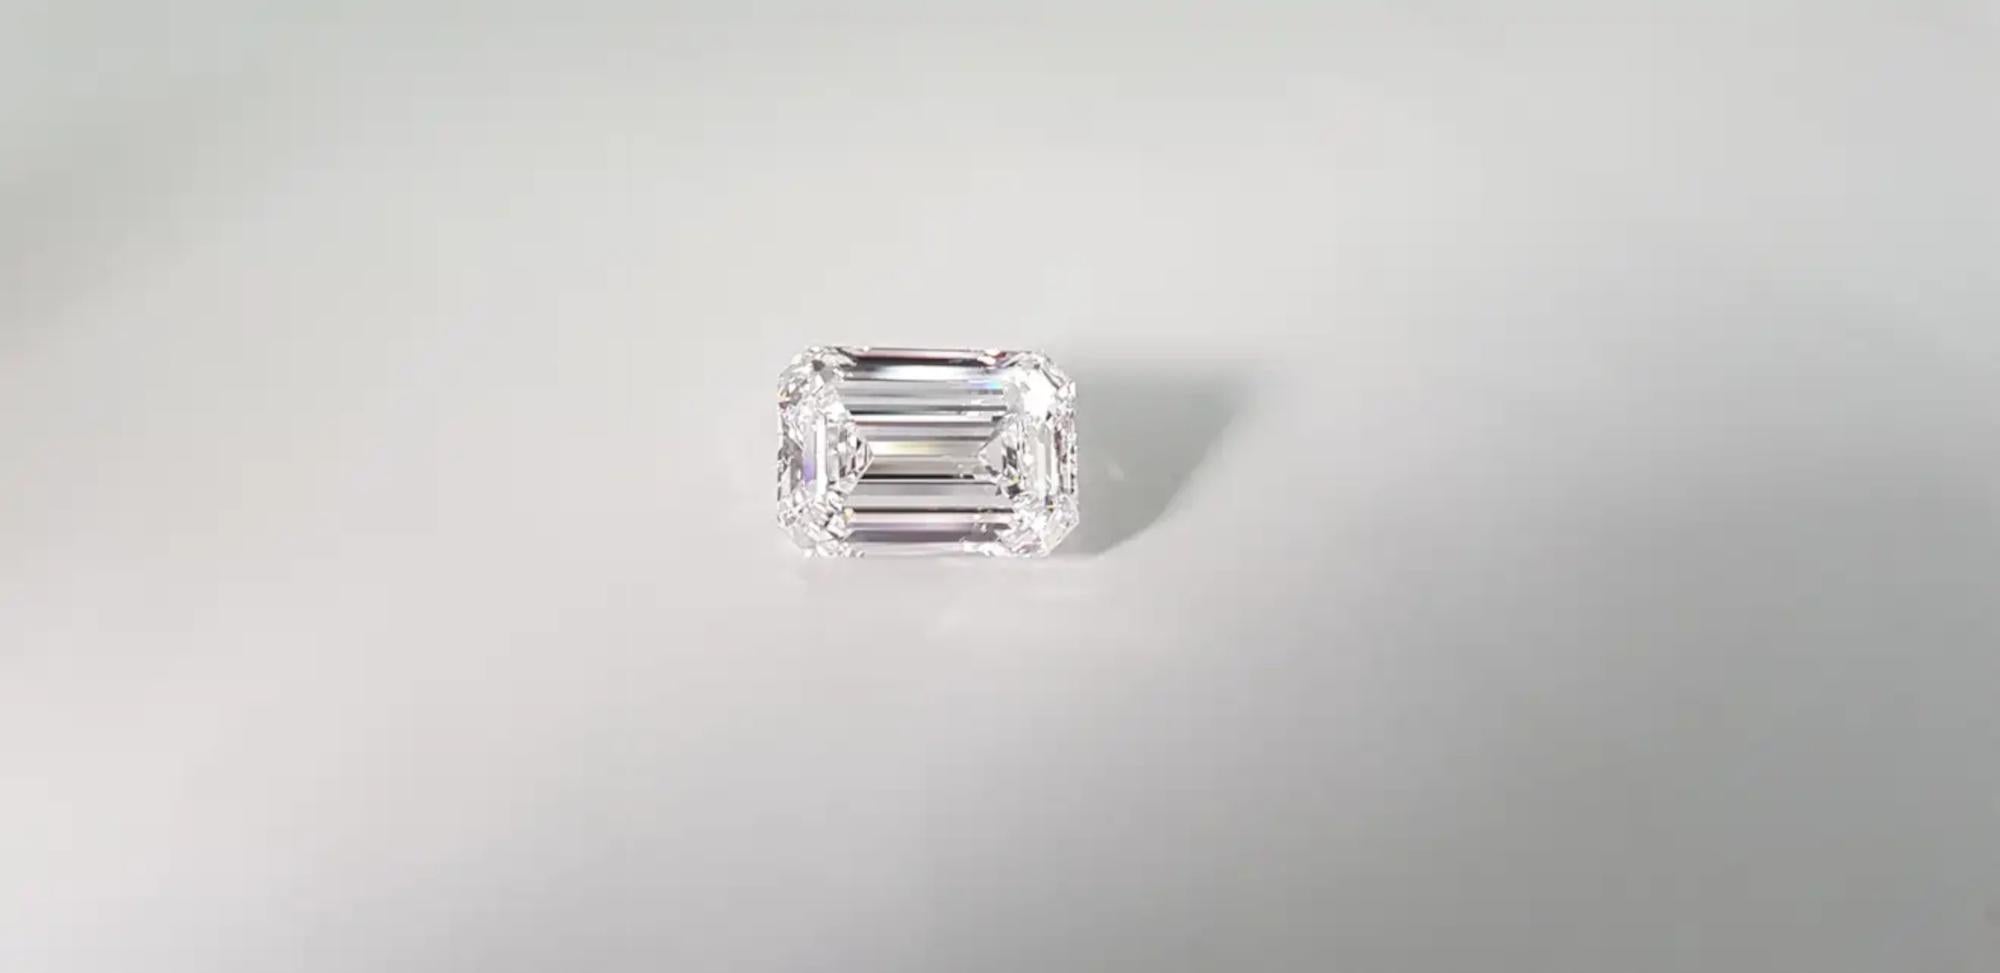 Bague solitaire en diamant taille émeraude de 6 carats certifiée GIA

